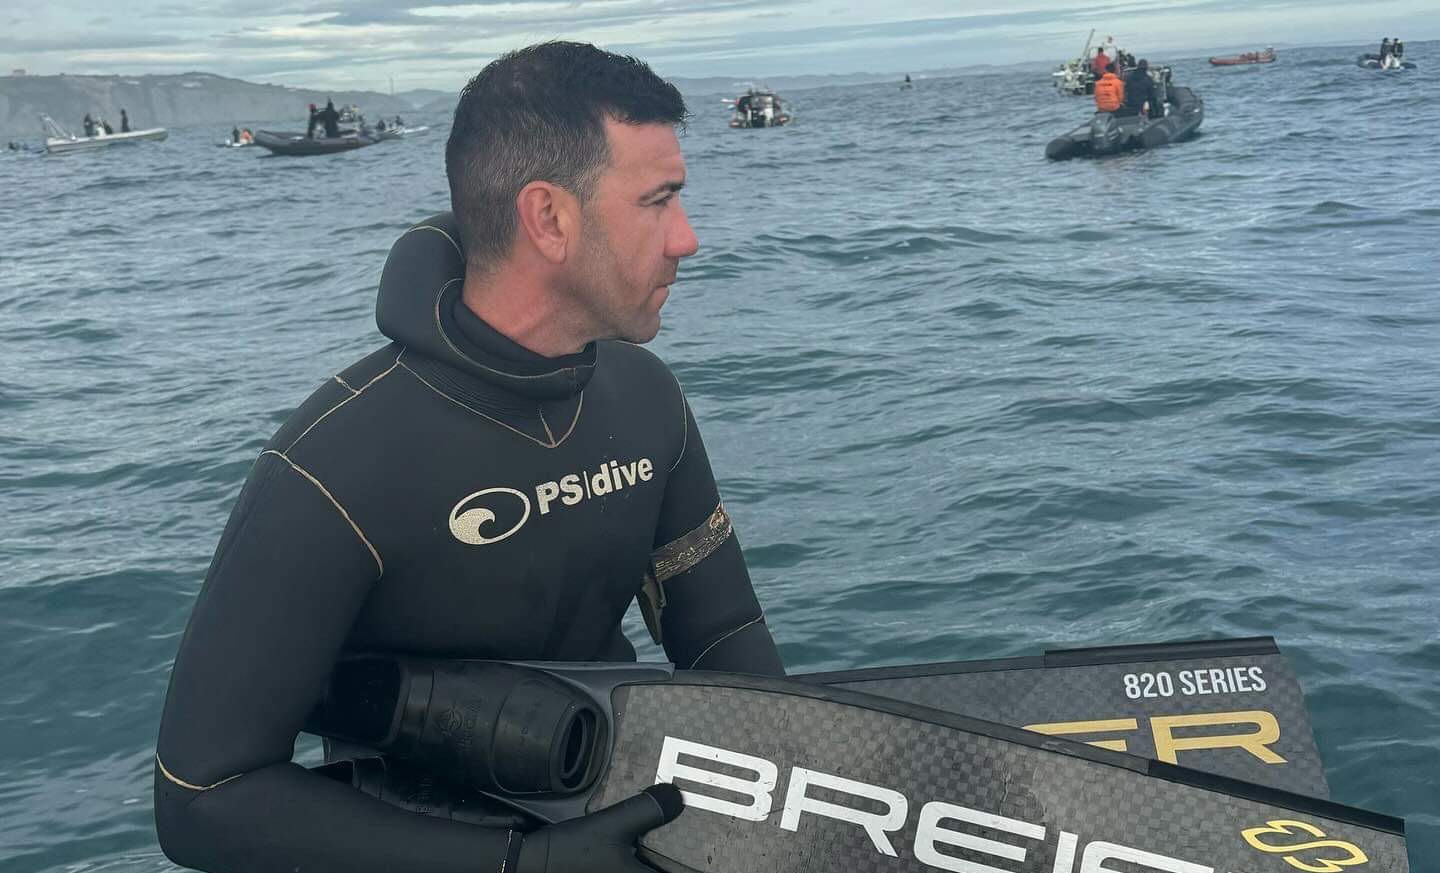 El aguileño José Sánchez Carrique consigue la pieza de mayor tamaño en el Campeonato de España de Pesca Submarina y entra en el Top10